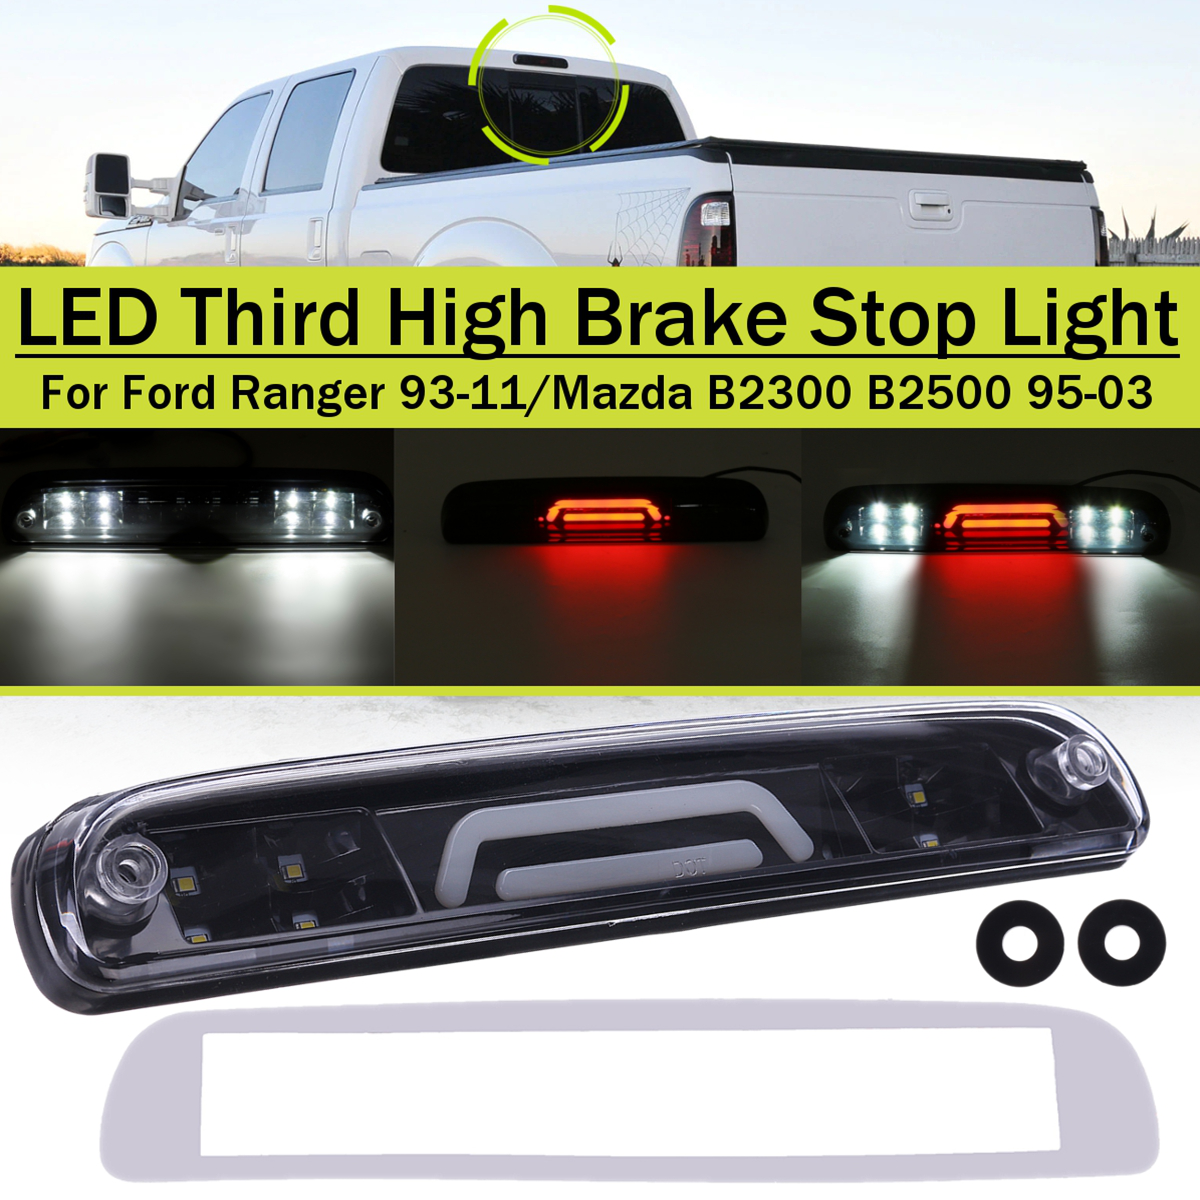 1PC Rear LED Third High Brake Light for Ford Ranger 1993-2011 for Mazda B2300 B2500 1995-2003